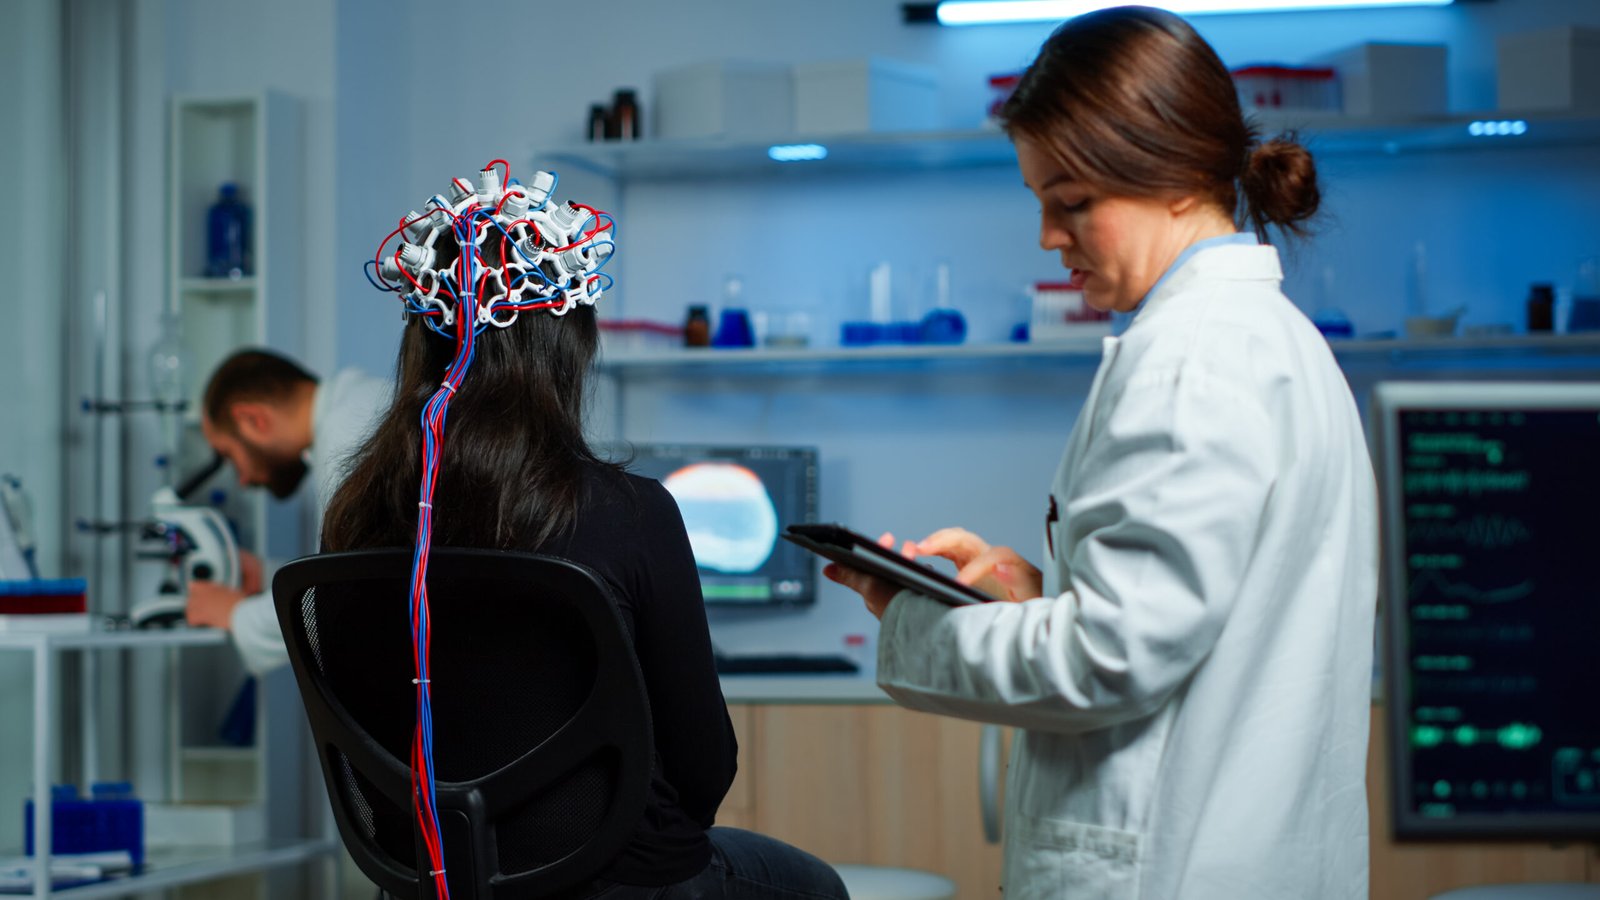 Neurologista com tablet na mão anotando as movimentações cerebrais da paciente, que está sentada na cadeira com uma espécie de touca.